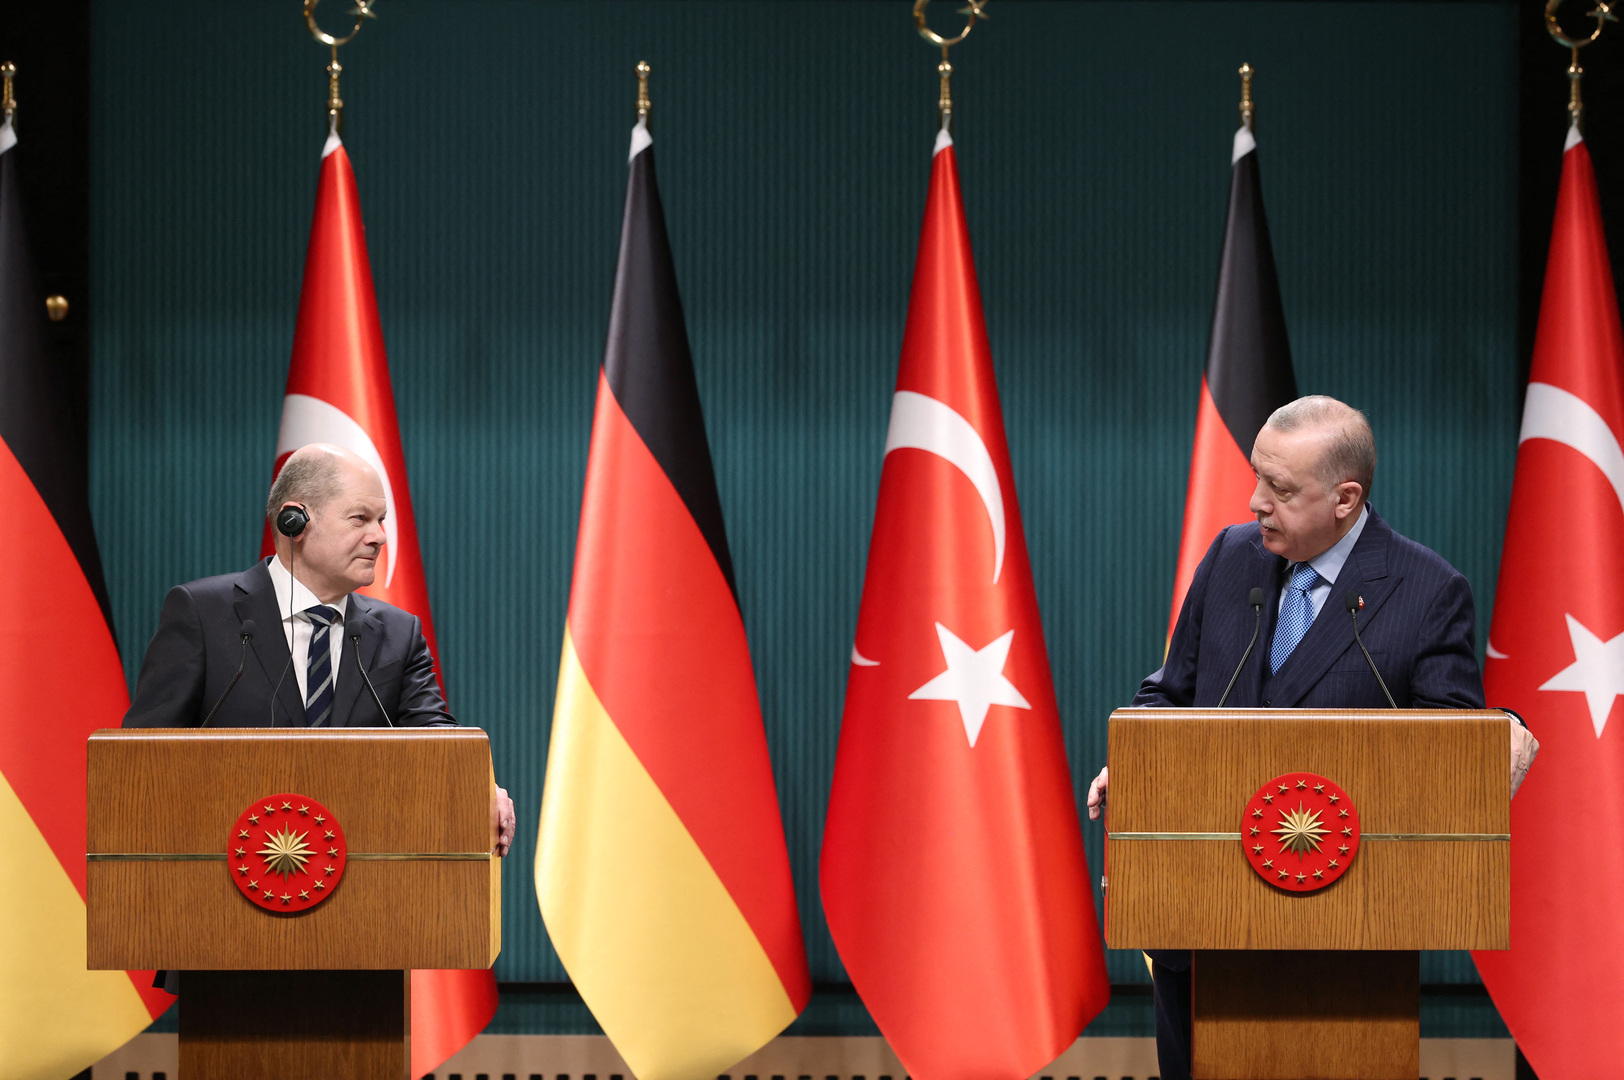 أردوغان لشولتس: ننتظر من برلين العودة إلى مواقفها المحايدة تجاه العلاقات التركية اليونانية